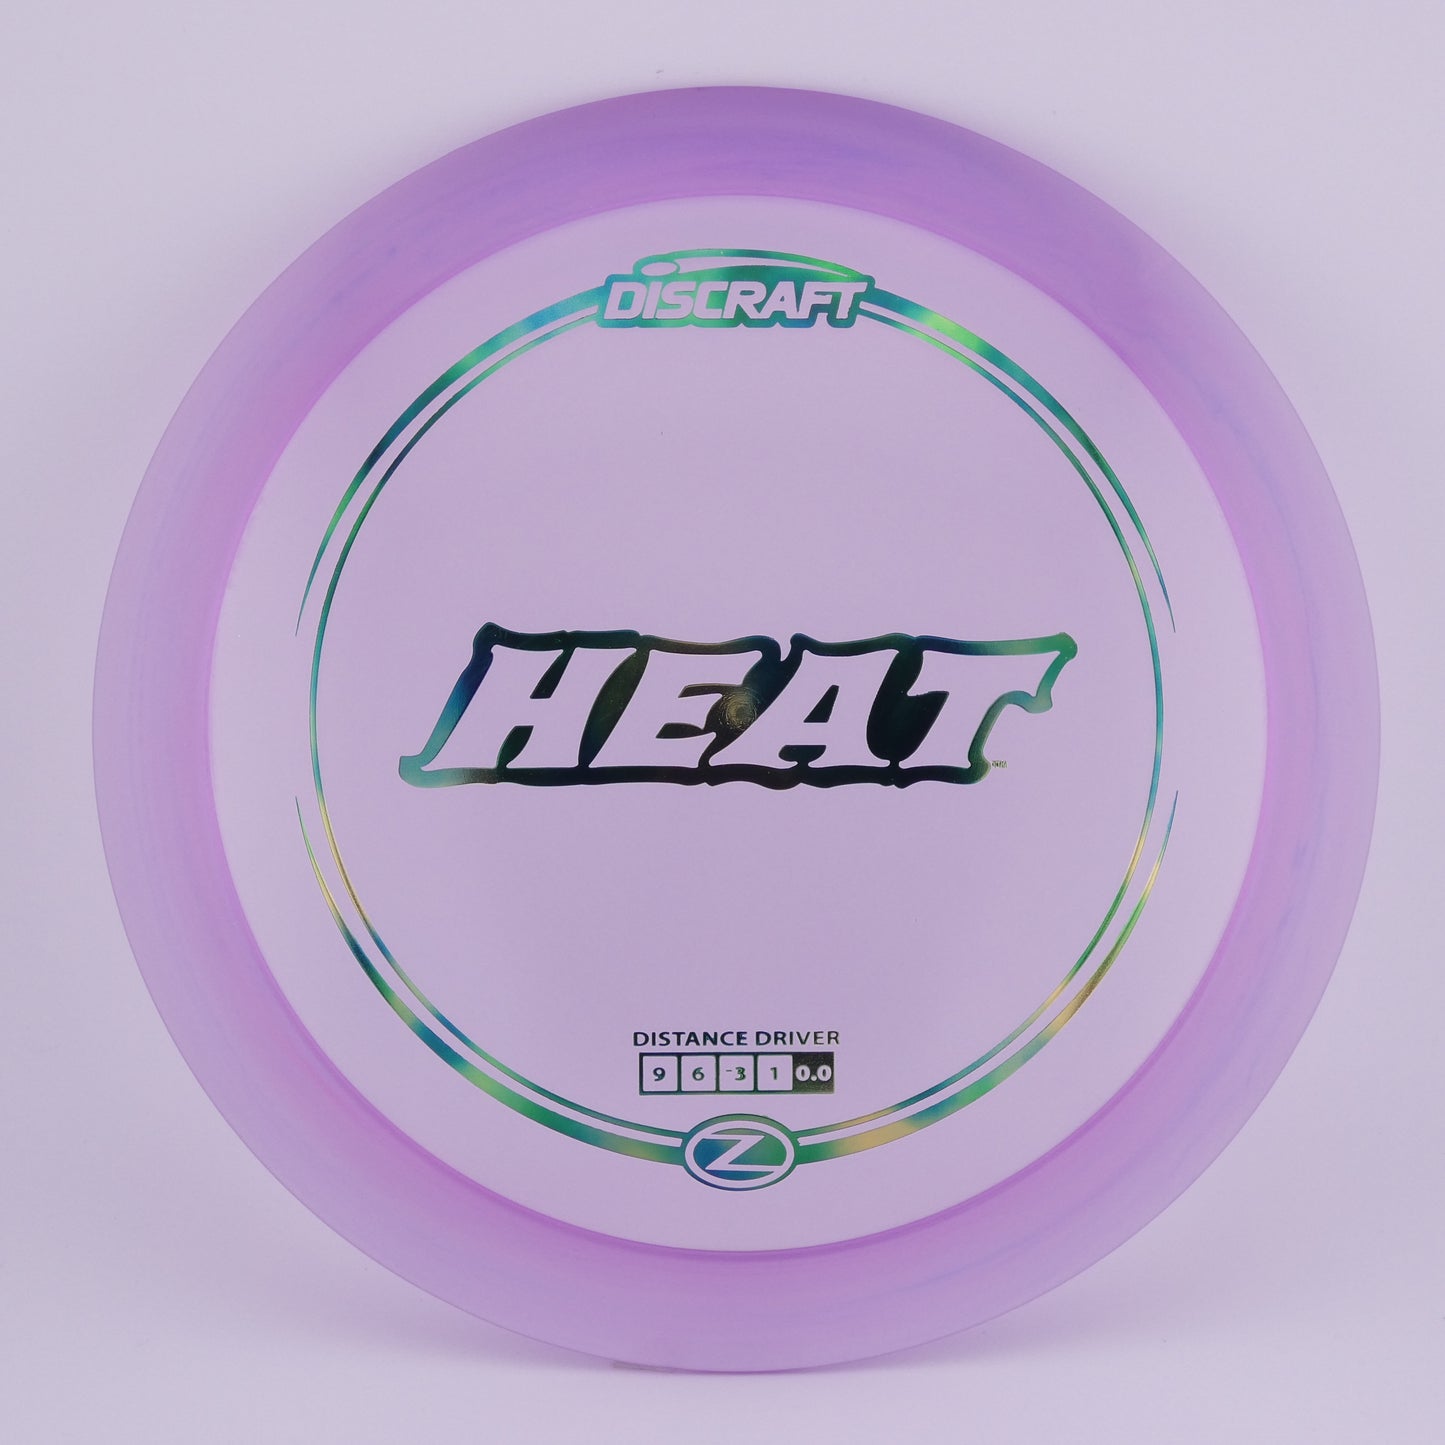 Z Line Heat 167-169g